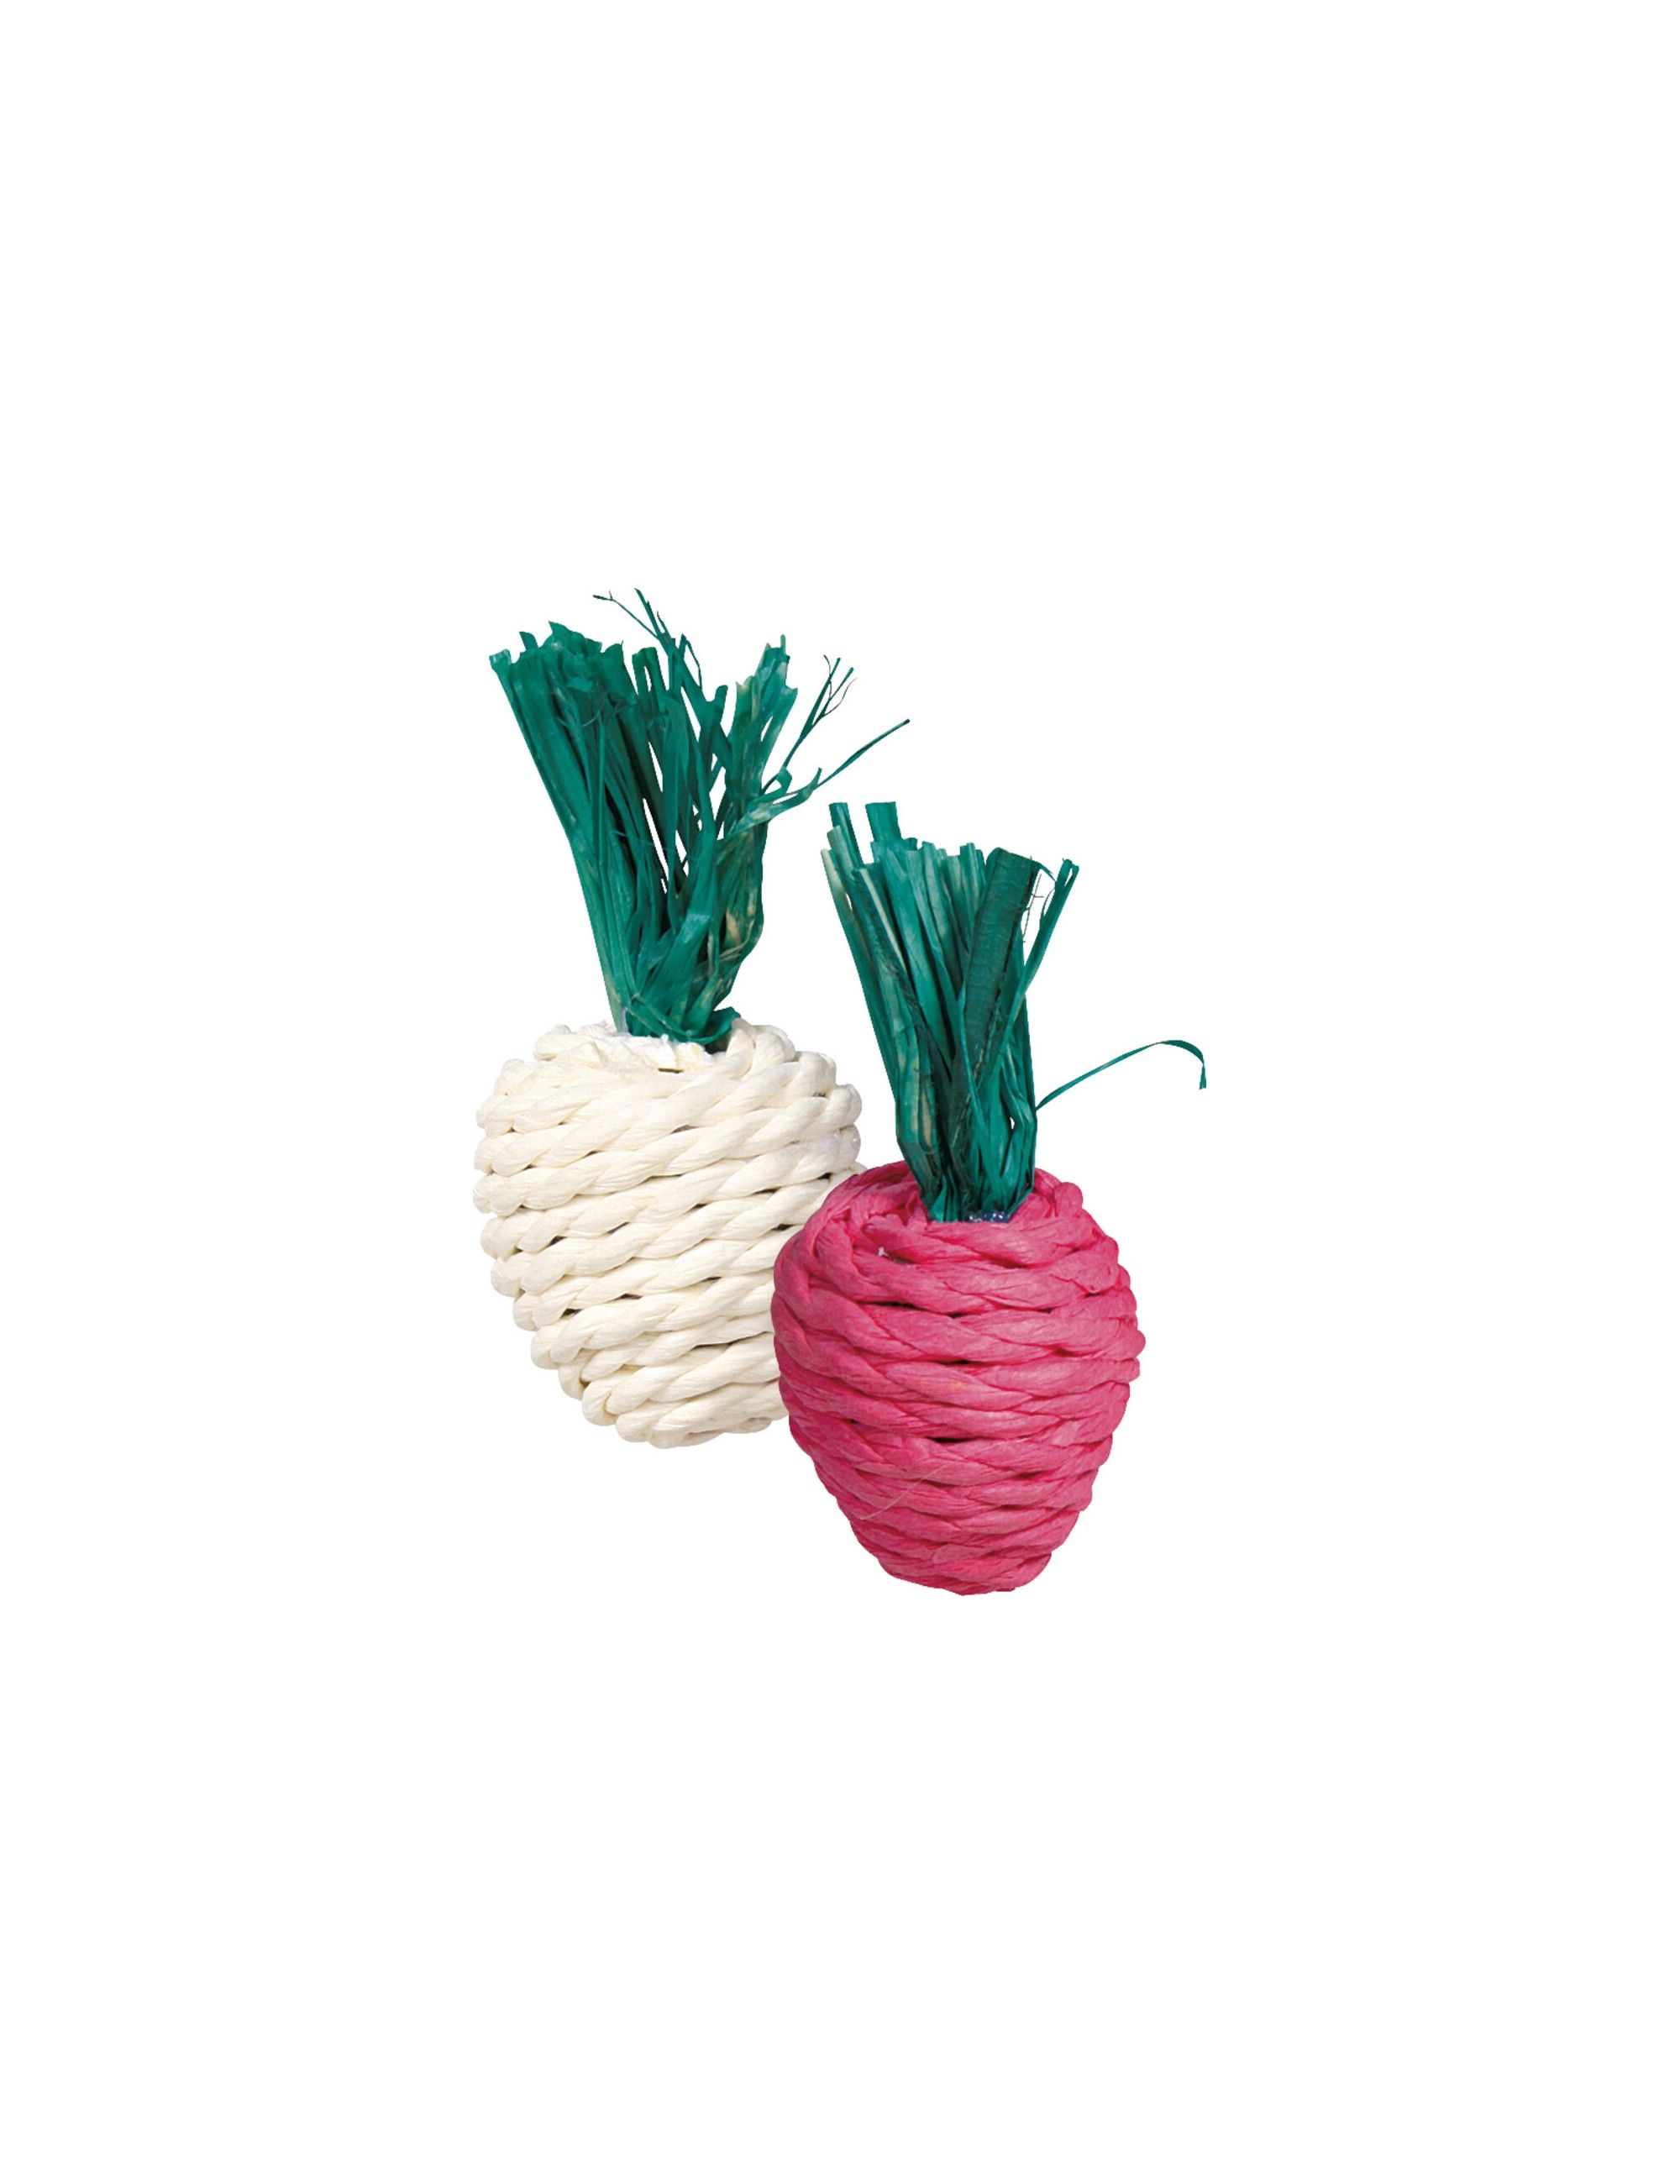 TRIXIE - “Radish” Snack Straw Toy Set